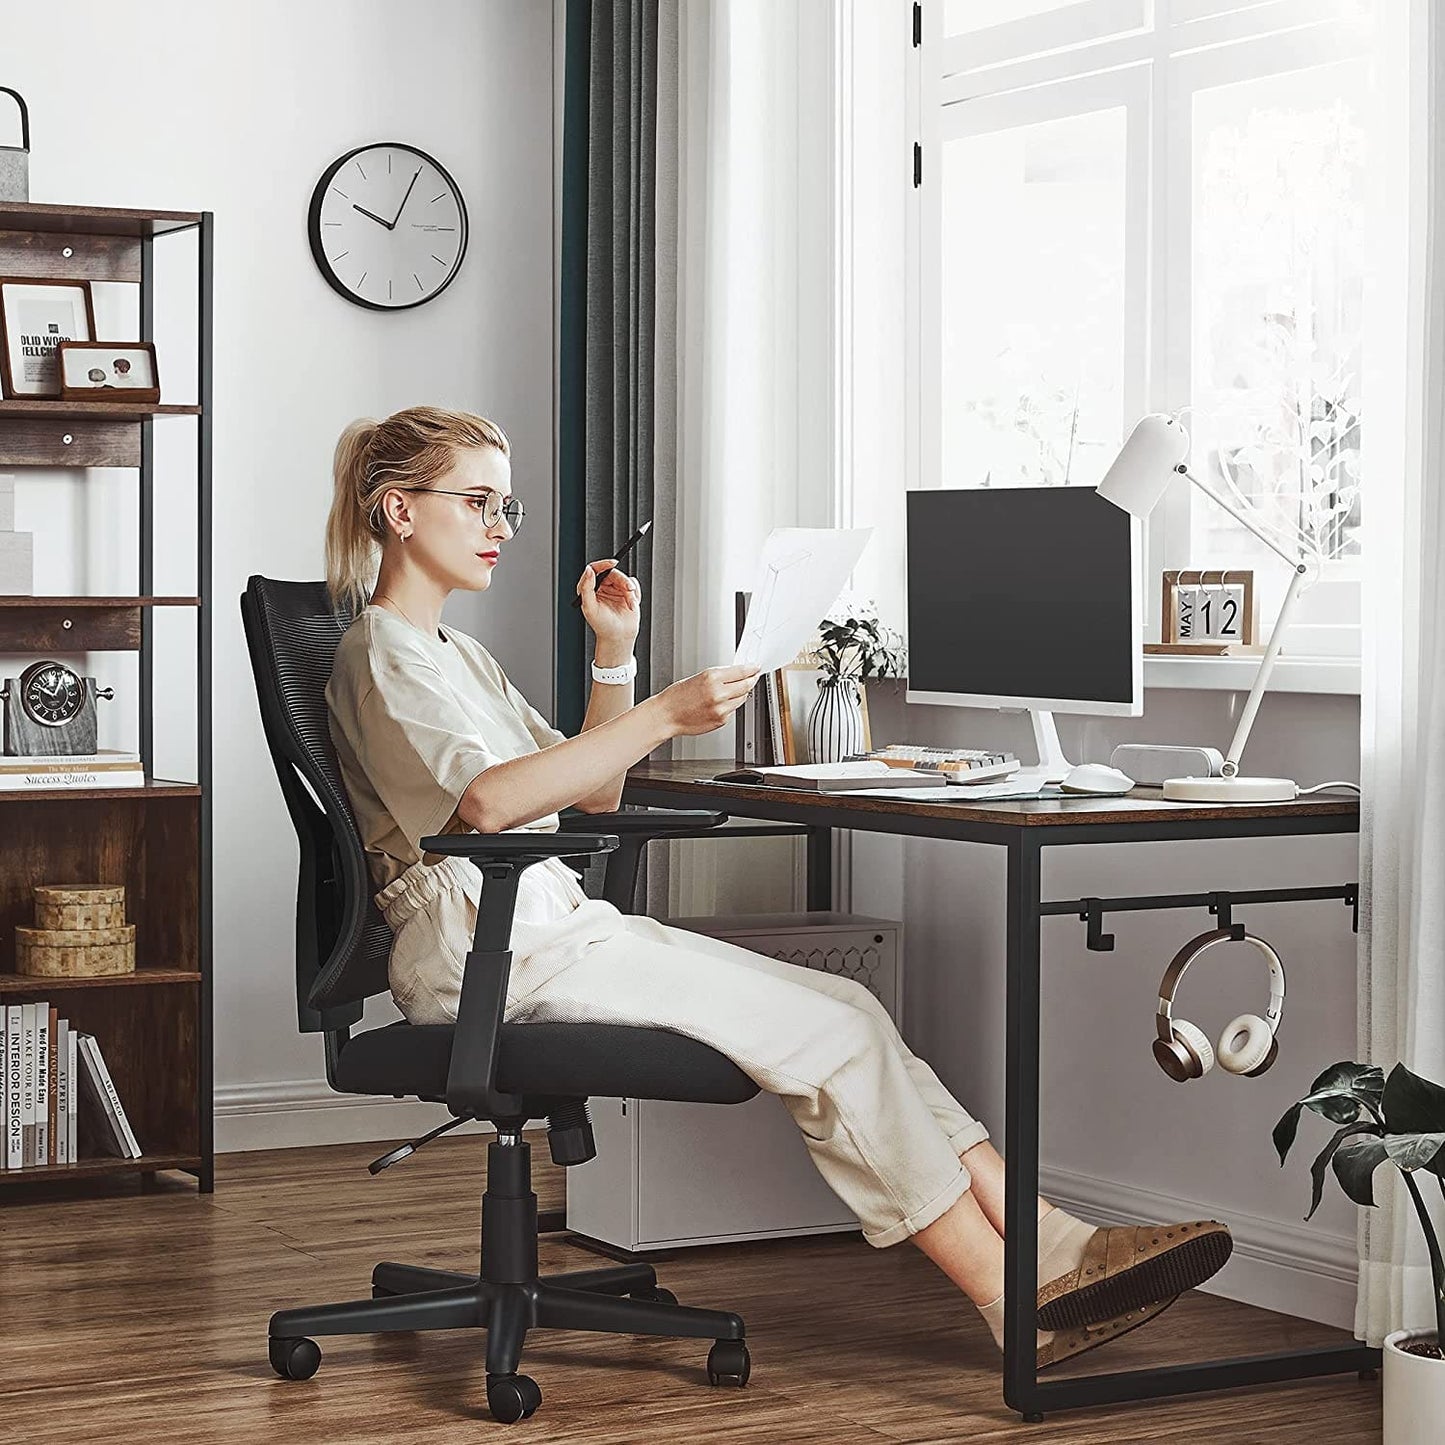 Bürostuhl in Netzoptik, ergonomischer Drehstuhl mit Kippmechanismus, verstellbare Rückenlehne und Armlehnen, Belastbarkeit 120 kg